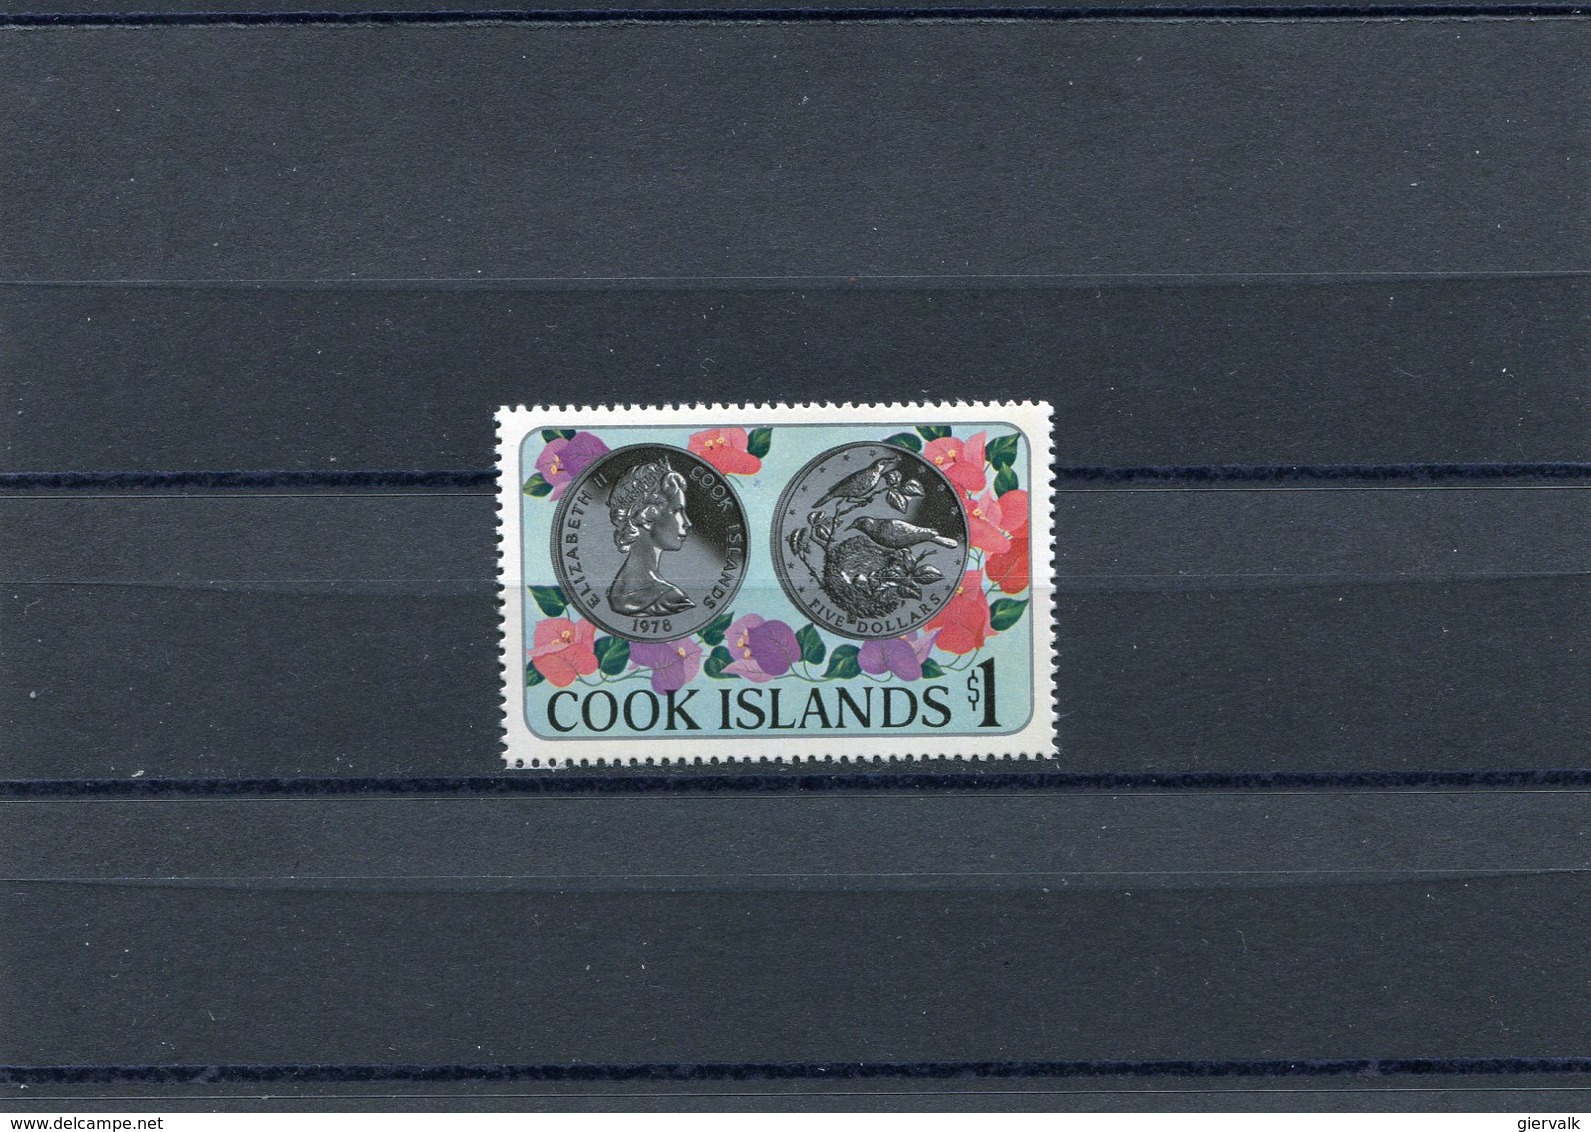 COOK ISLANDS 1978 SONG BIRD MNH. - Pájaros Cantores (Passeri)